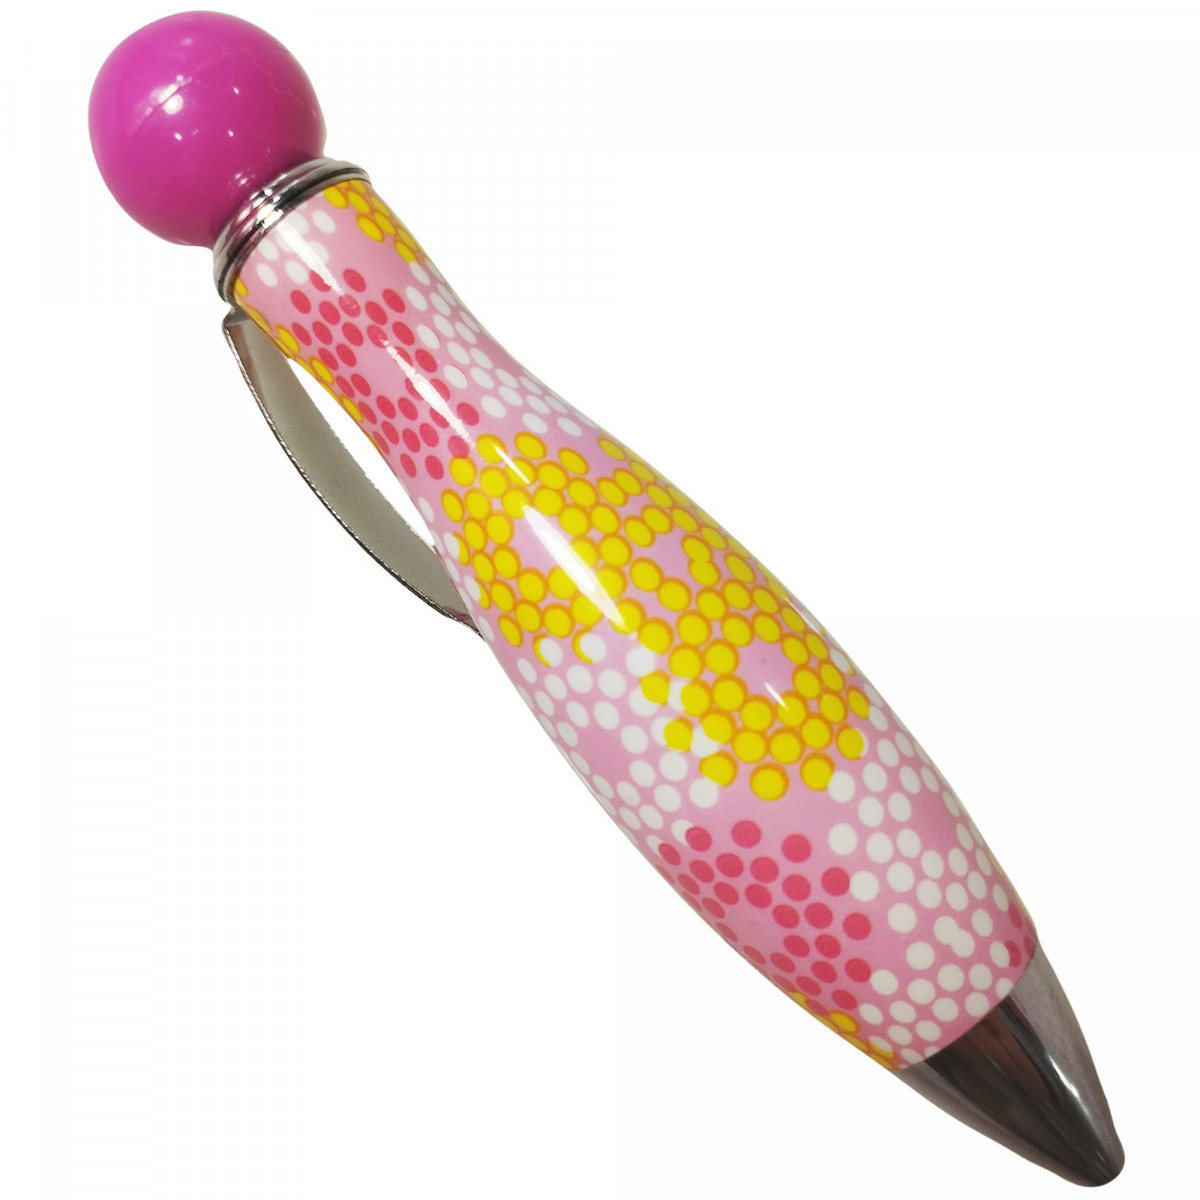 Bolígrafo gordo con estampado de puntos en forma de flores, gracioso para regalar